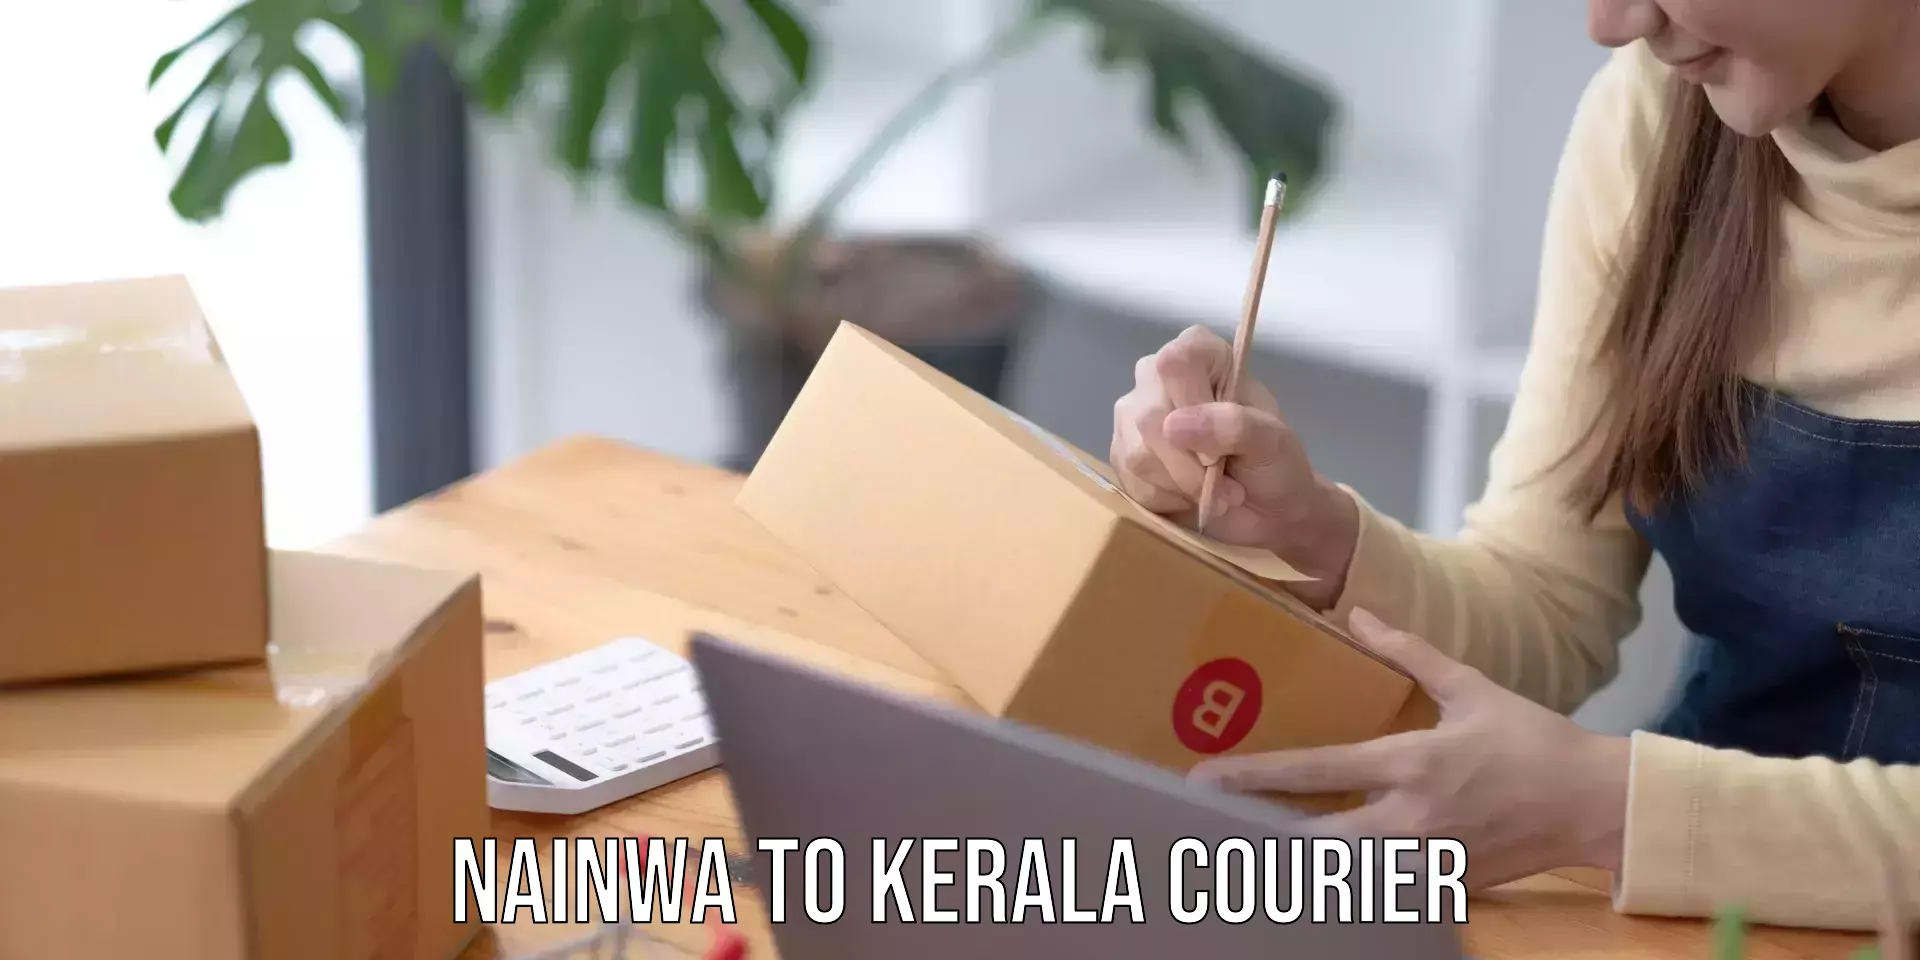 Speedy delivery service Nainwa to Kerala